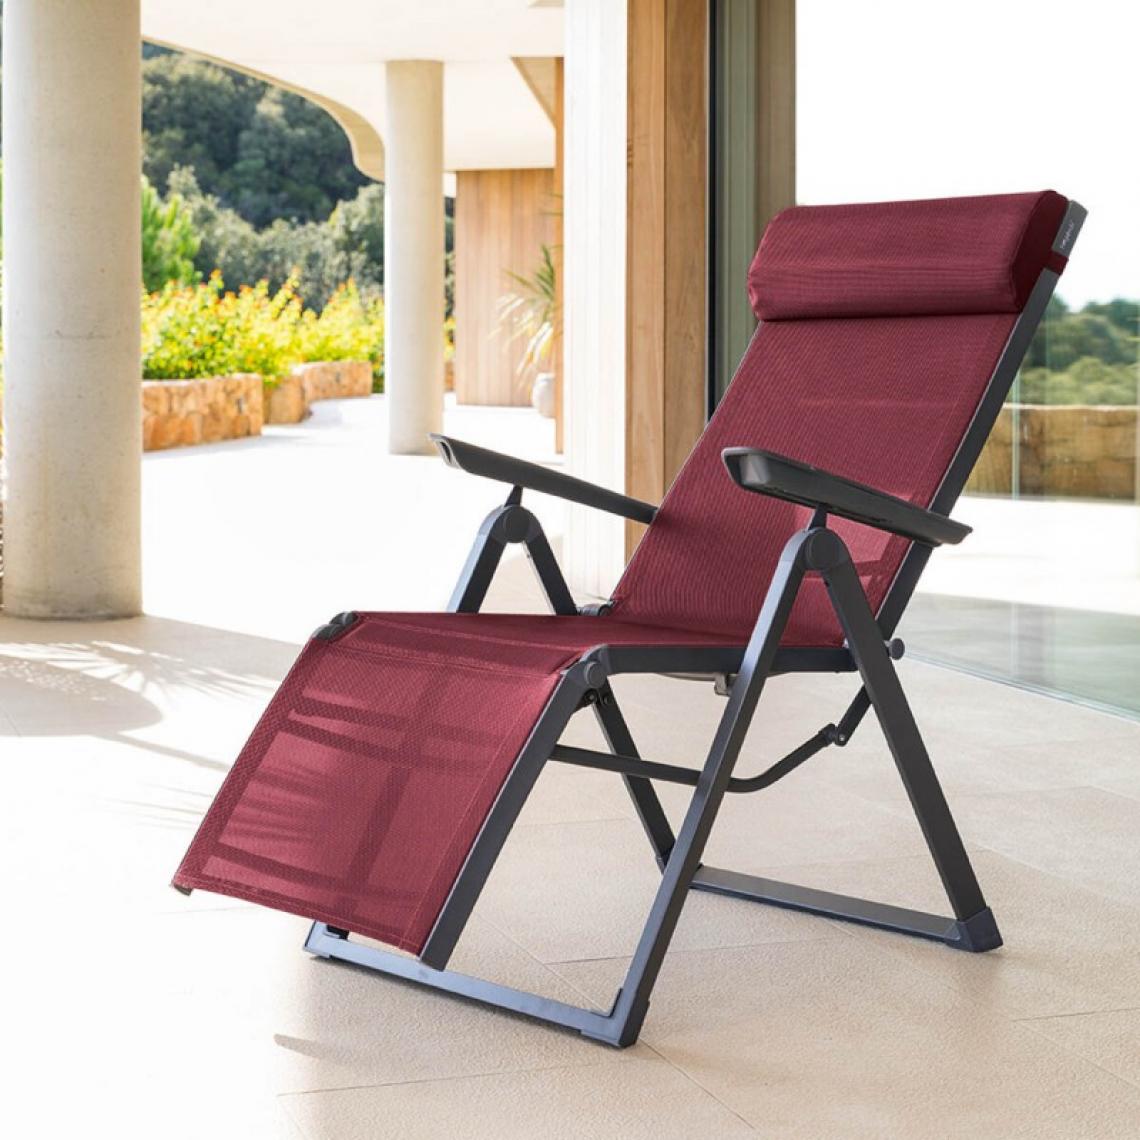 Sans Marque - Chaise longue Decima Hespéride bordeaux/graphite - Bordeaux - Transats, chaises longues